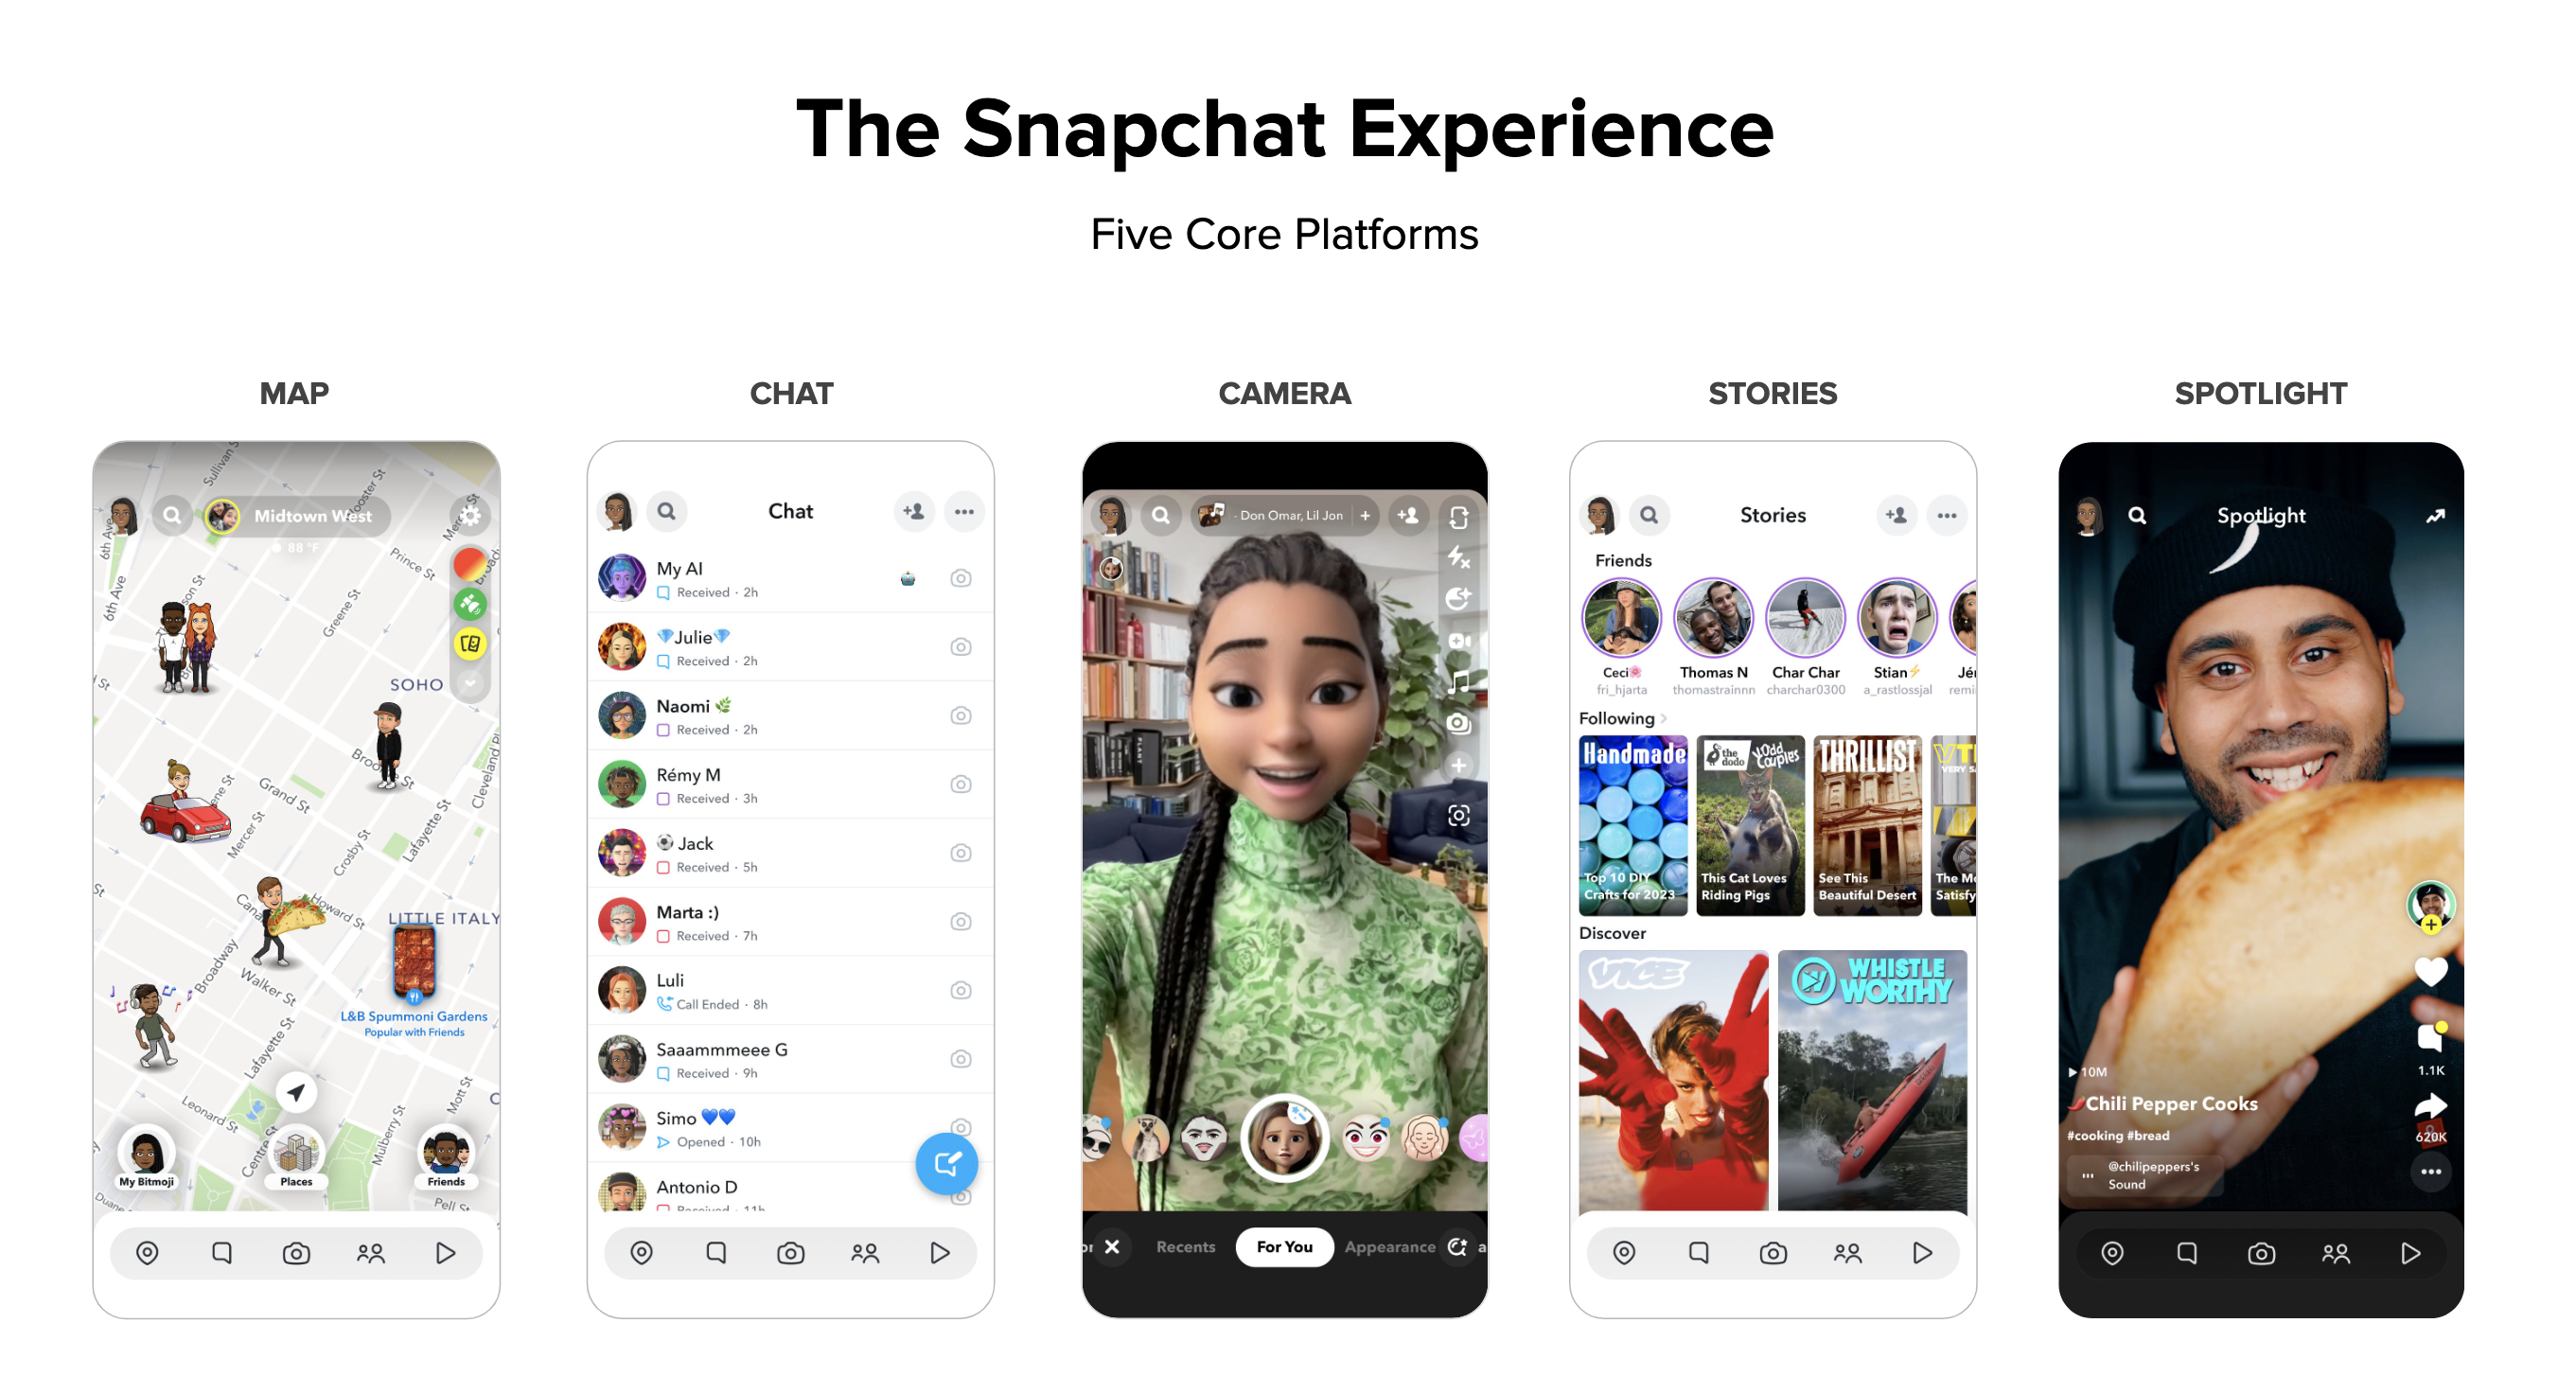 Snapchat's five core content platforms